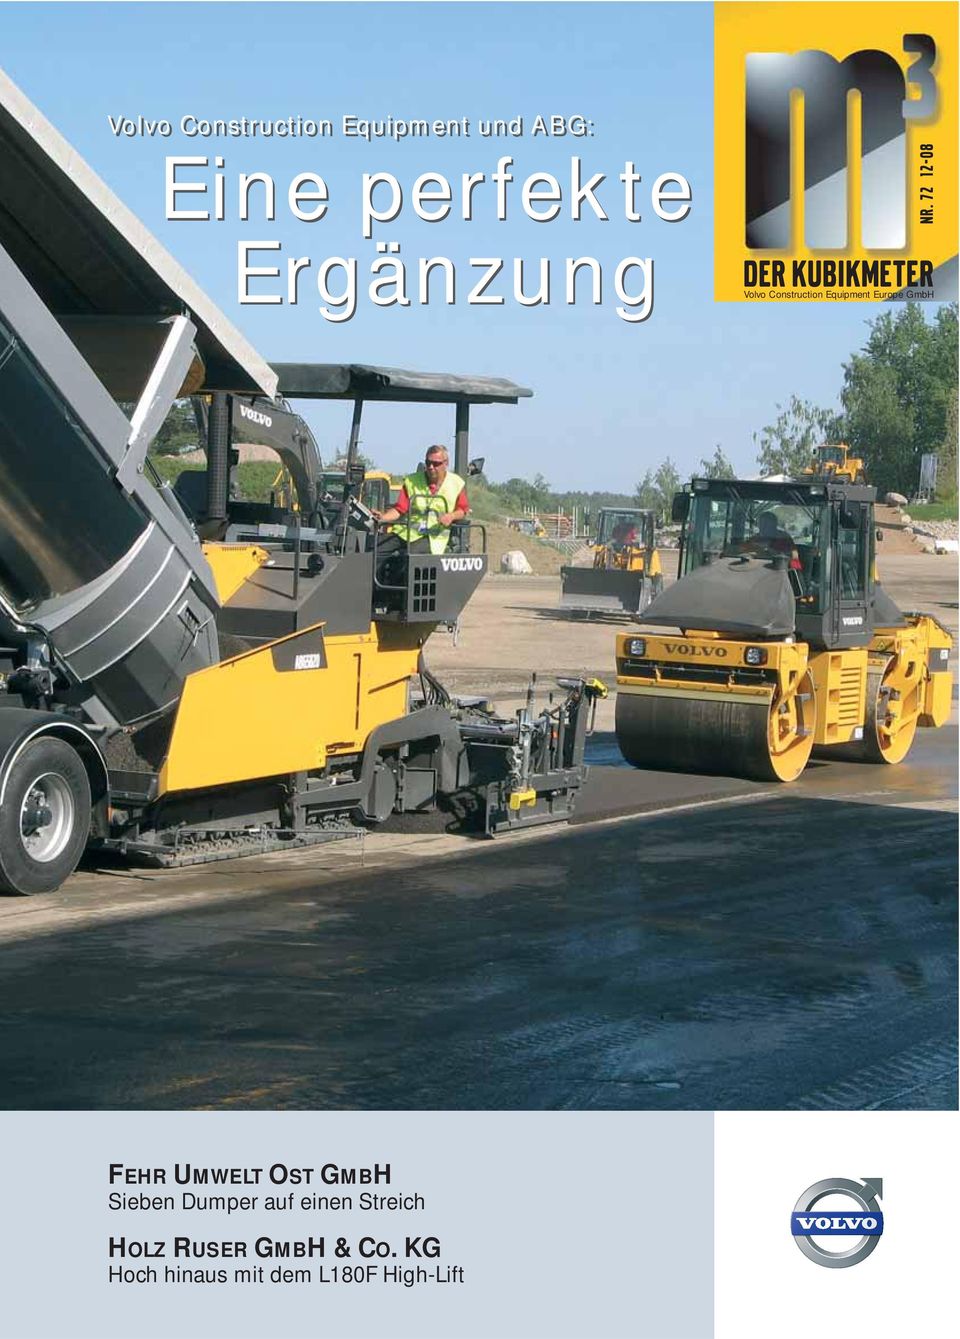 Equipment Europe GmbH FEHR UMWELT OST GMBH Sieben Dumper auf